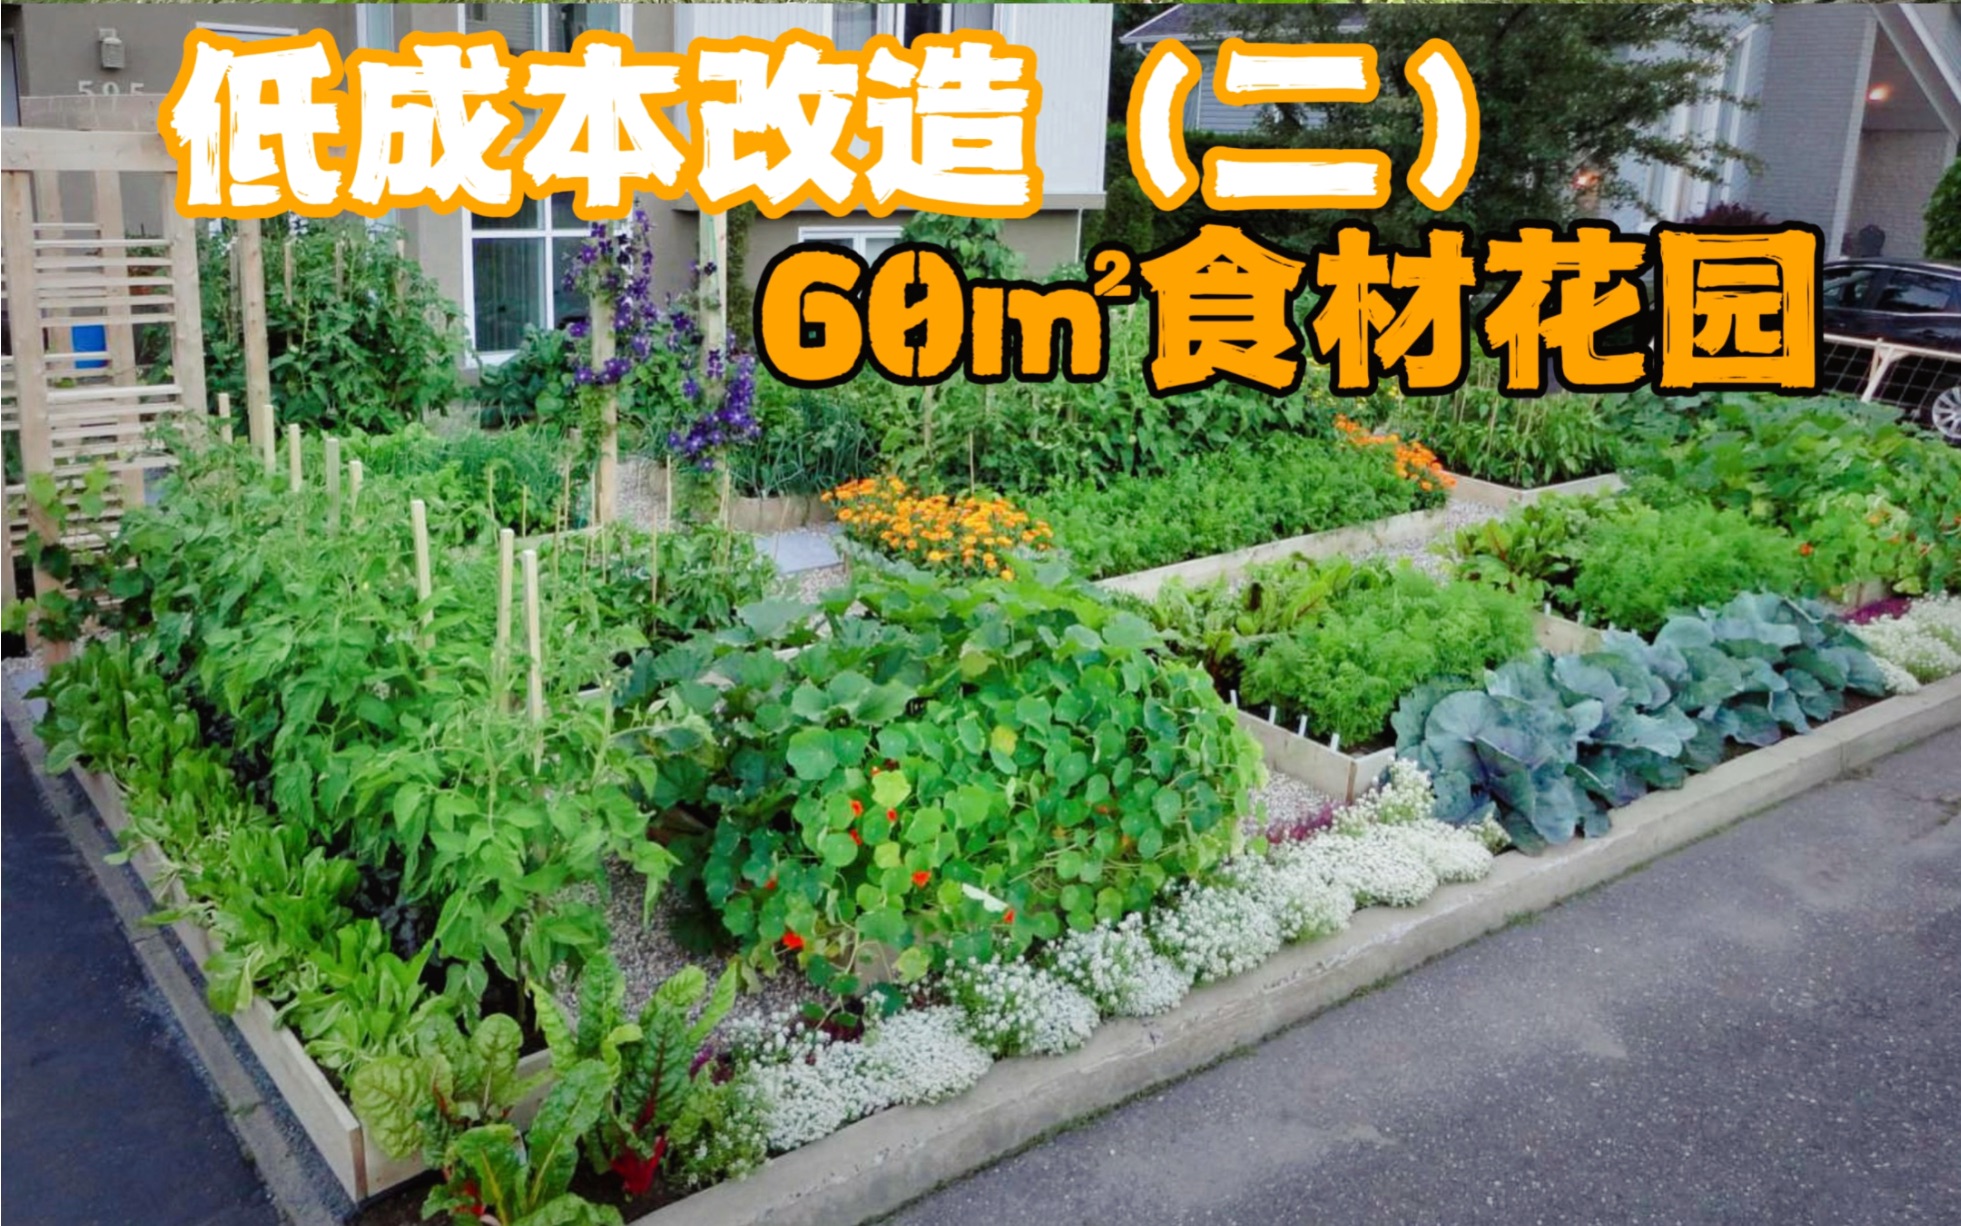 300元搞定了整个花园排水❗低成本改造食材花园第二期❗